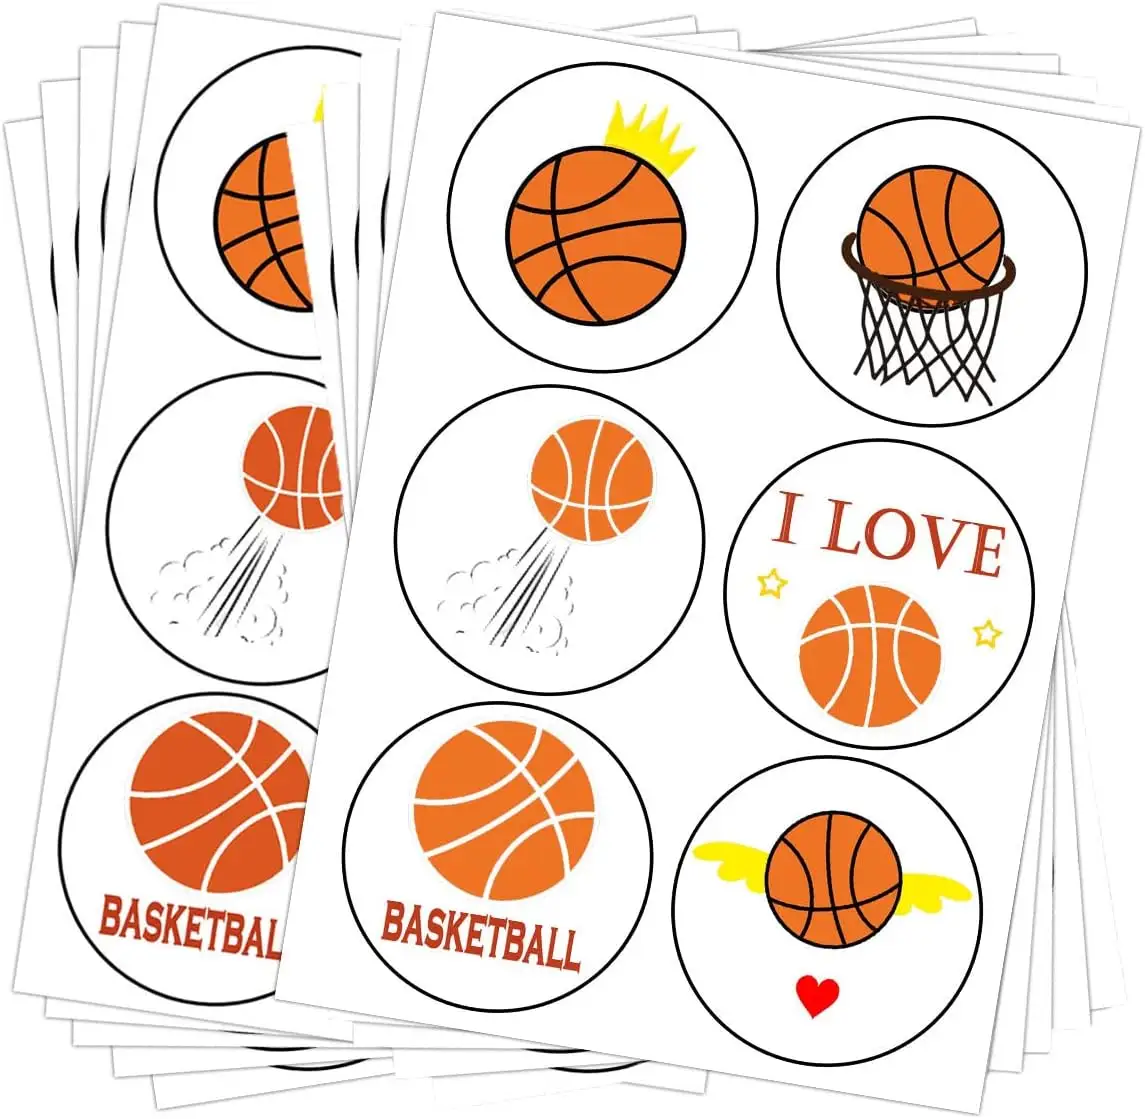 バスケットボールラベルロールステッカーバスケットボールスポーツパーティー用品装飾はジャーコンテナレターDIYステッカーラベルを支持します